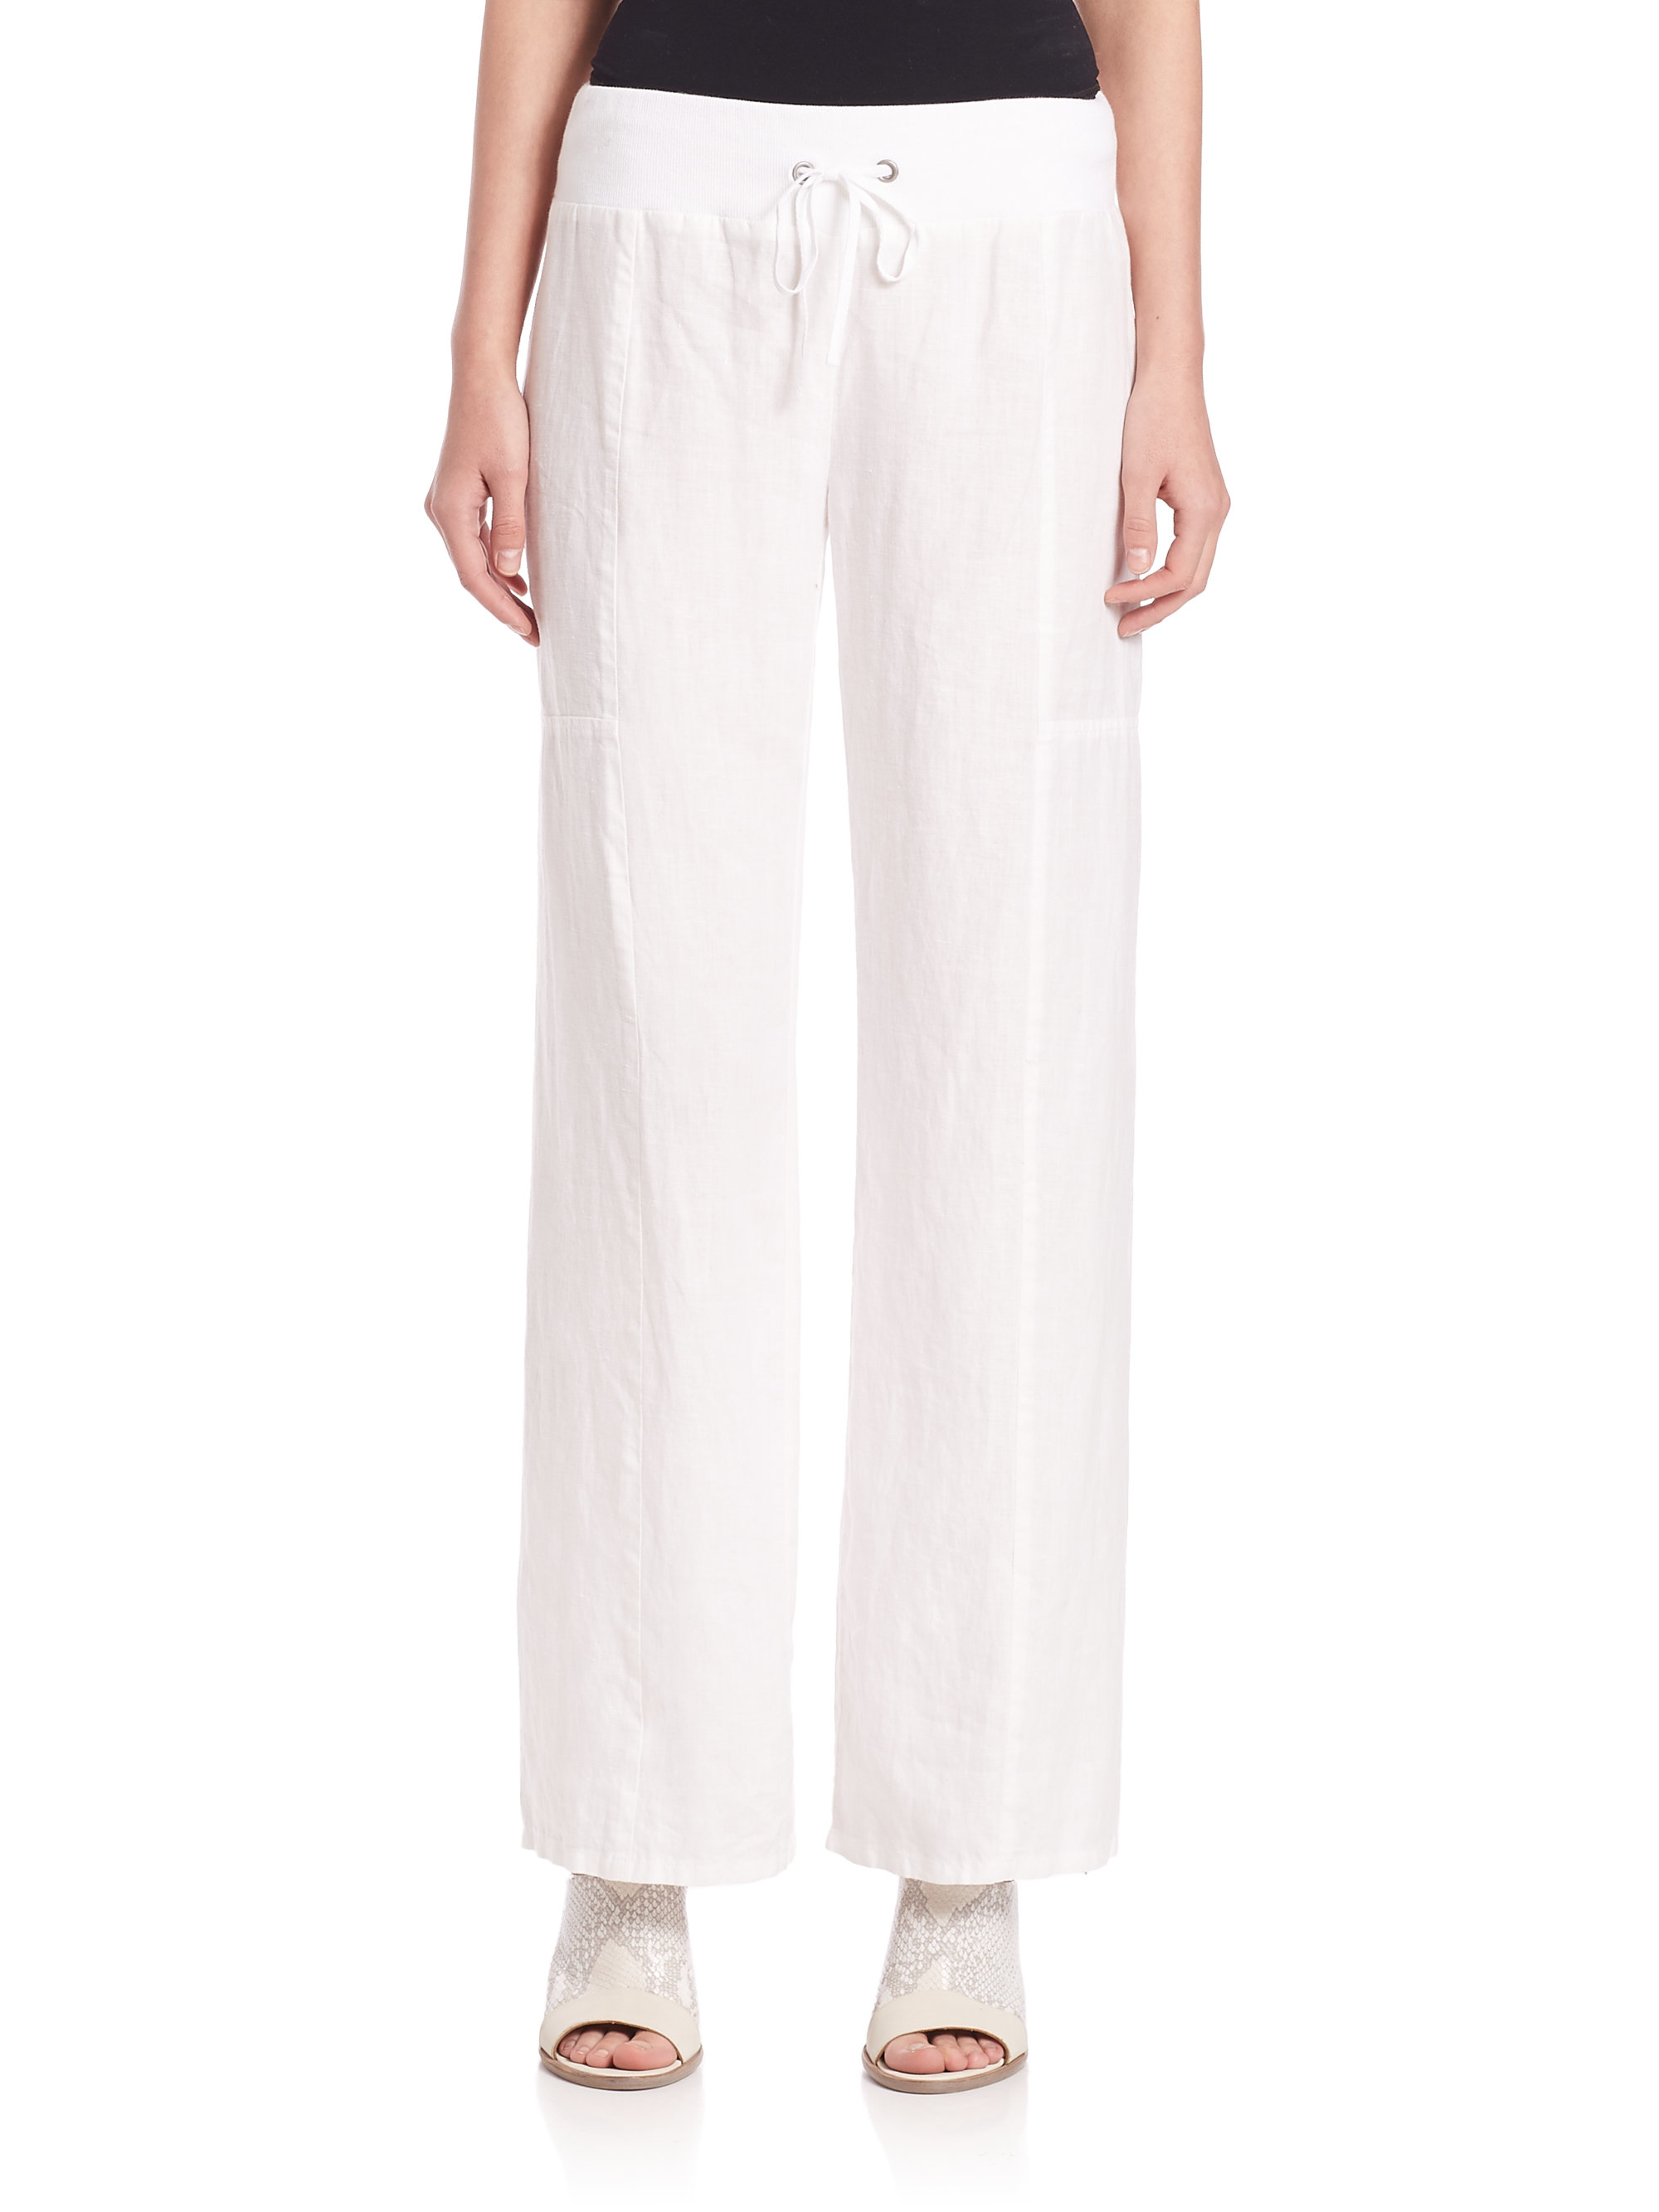 Lyst - Eileen Fisher Linen Wide-leg Pants in White